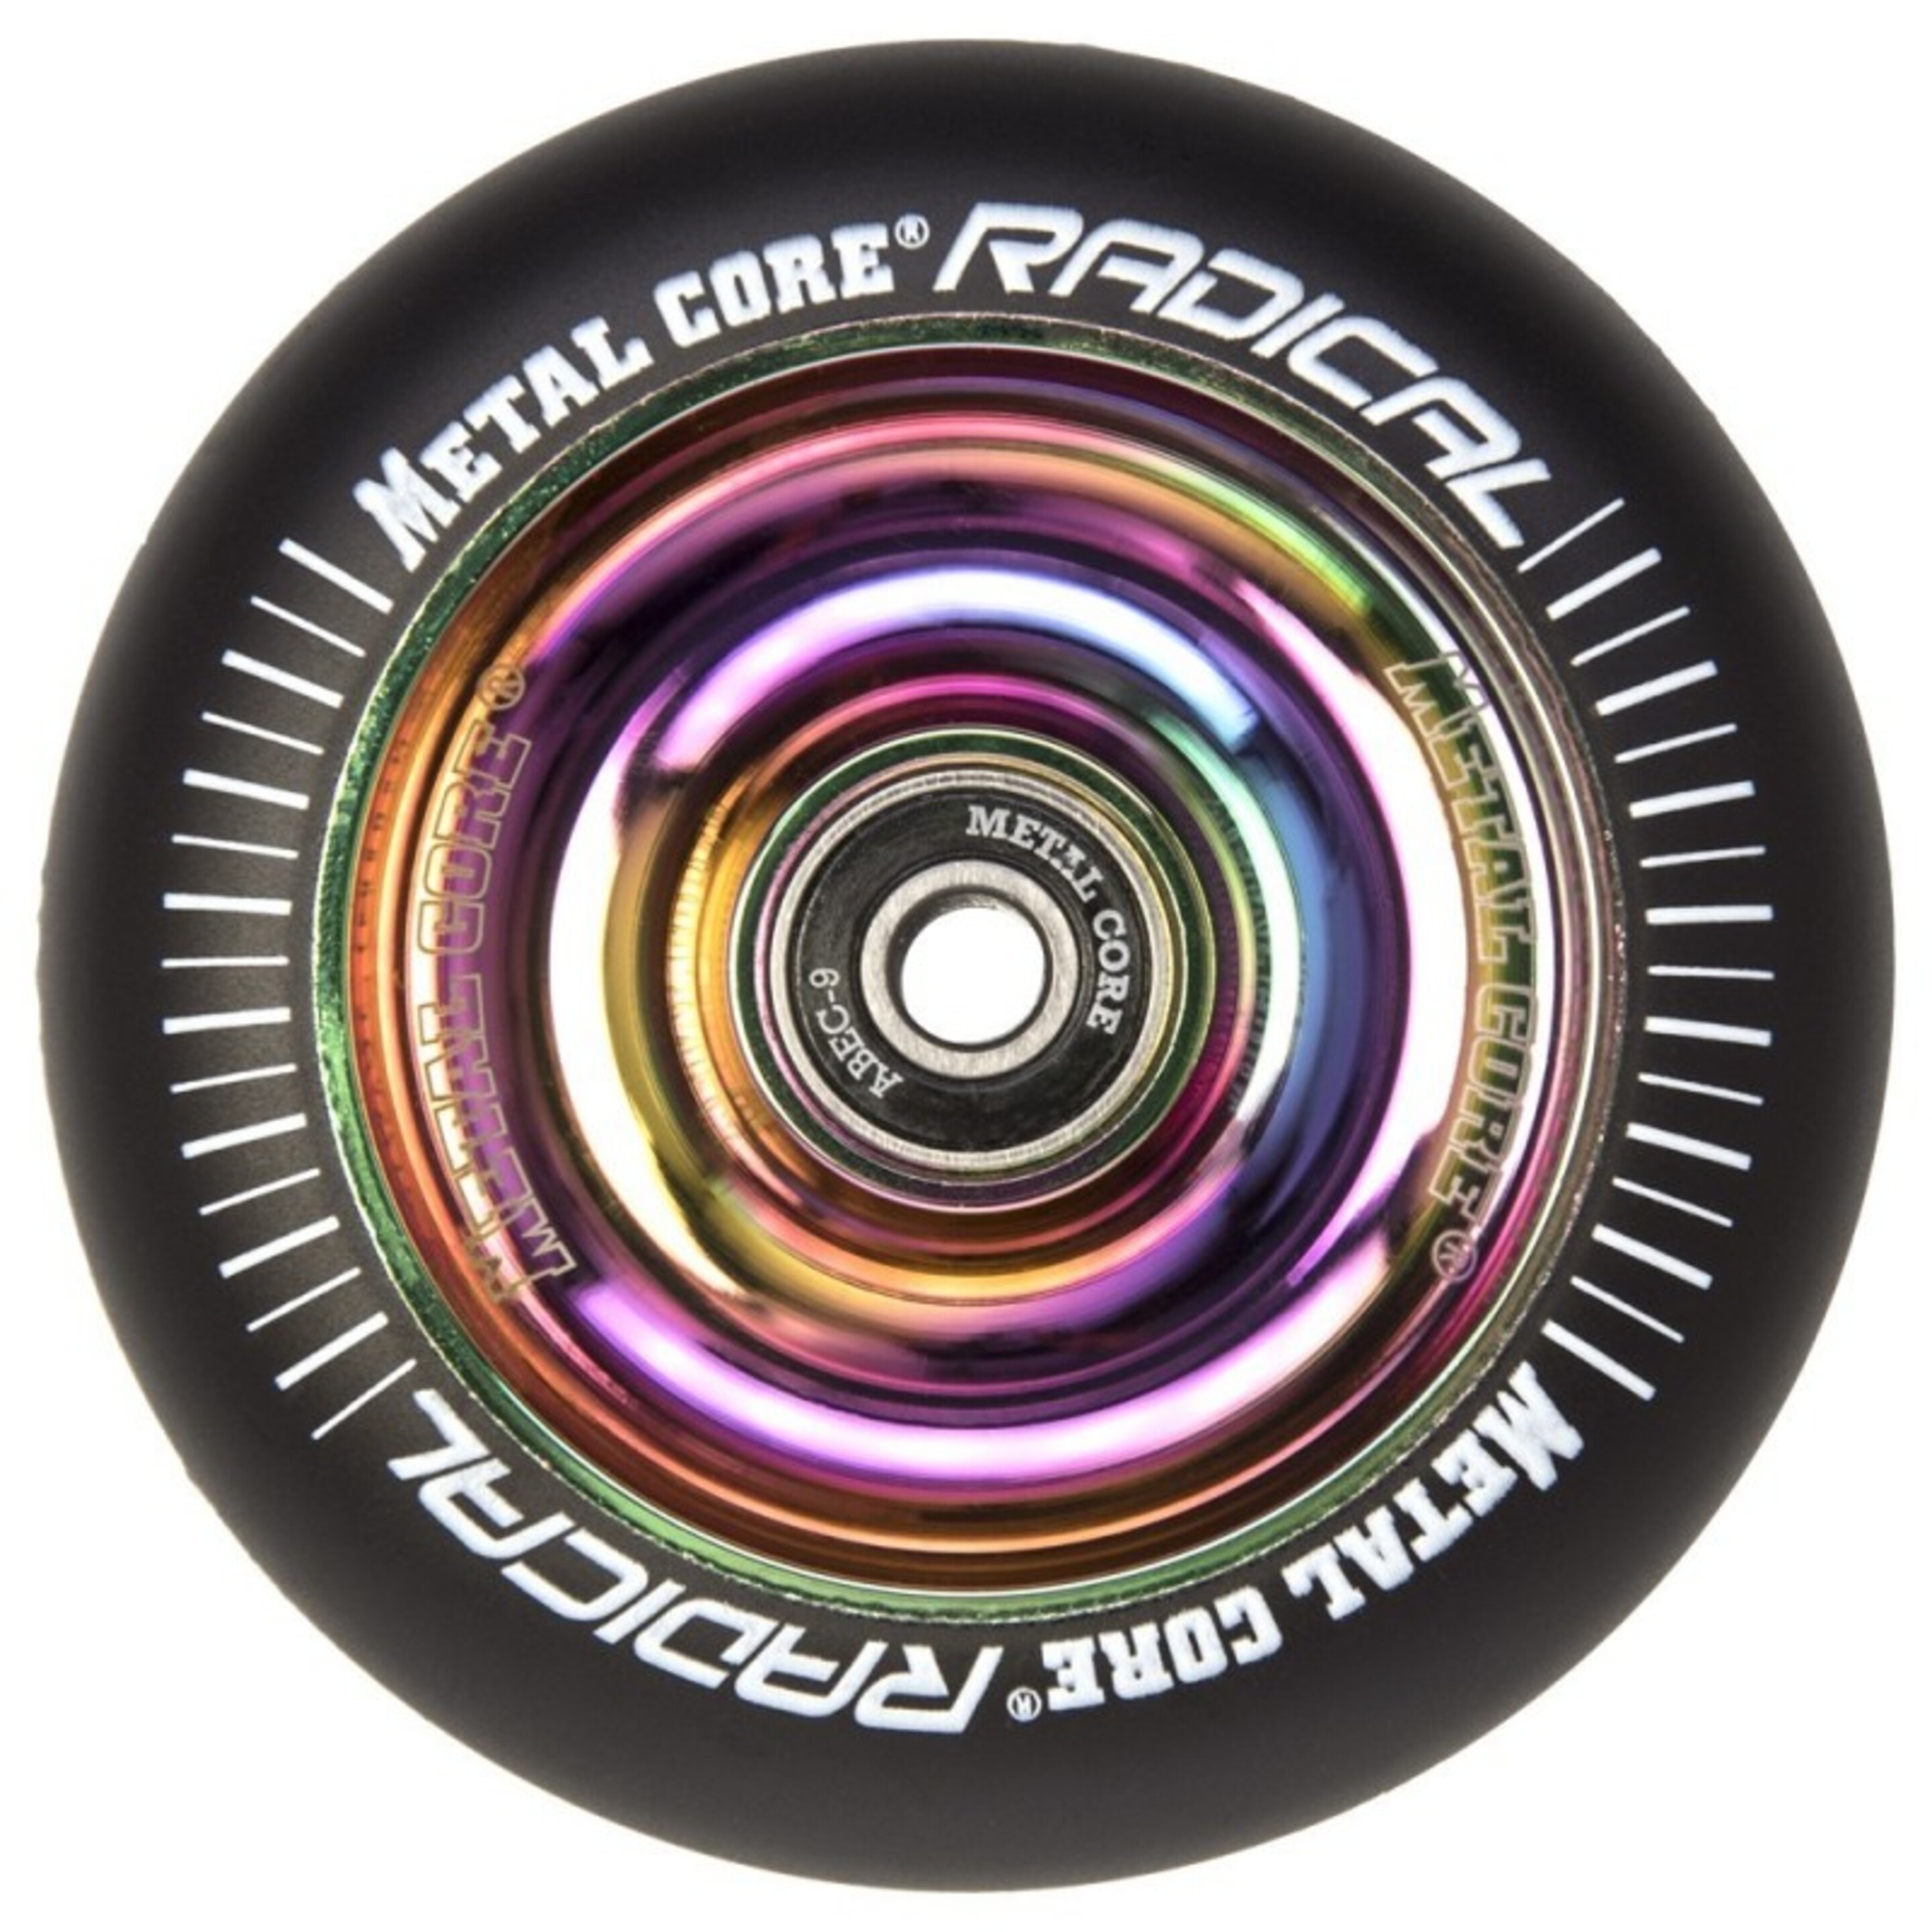 Ruedas Metal Core Radical Ref. Radical 100 Mm - Multicolor - Pieza De Recambio Patinete  MKP